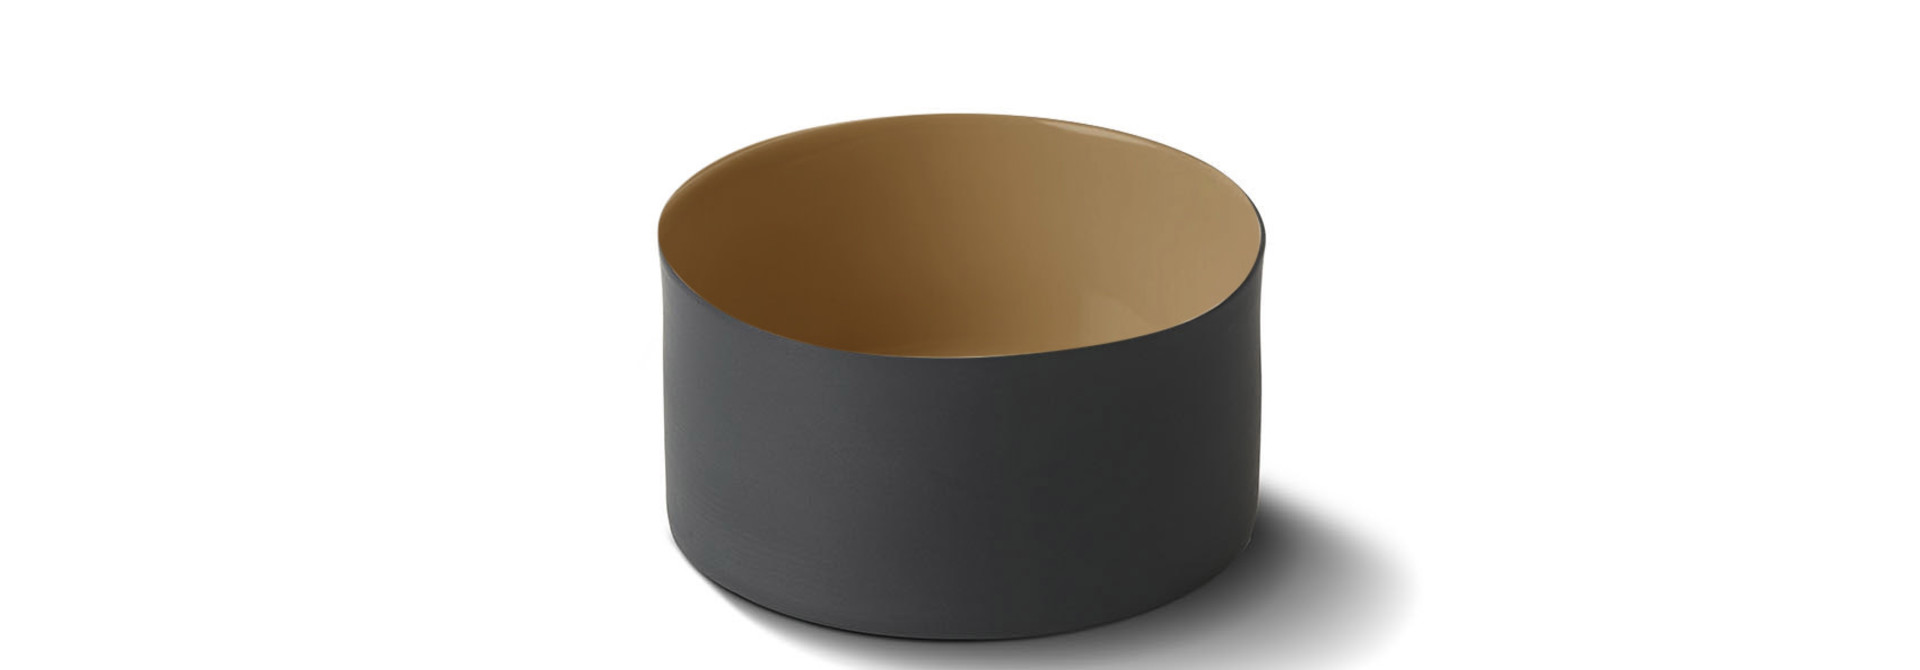 Cylinder Bowl Porcelain - Black&Straw- Esma Dereboy